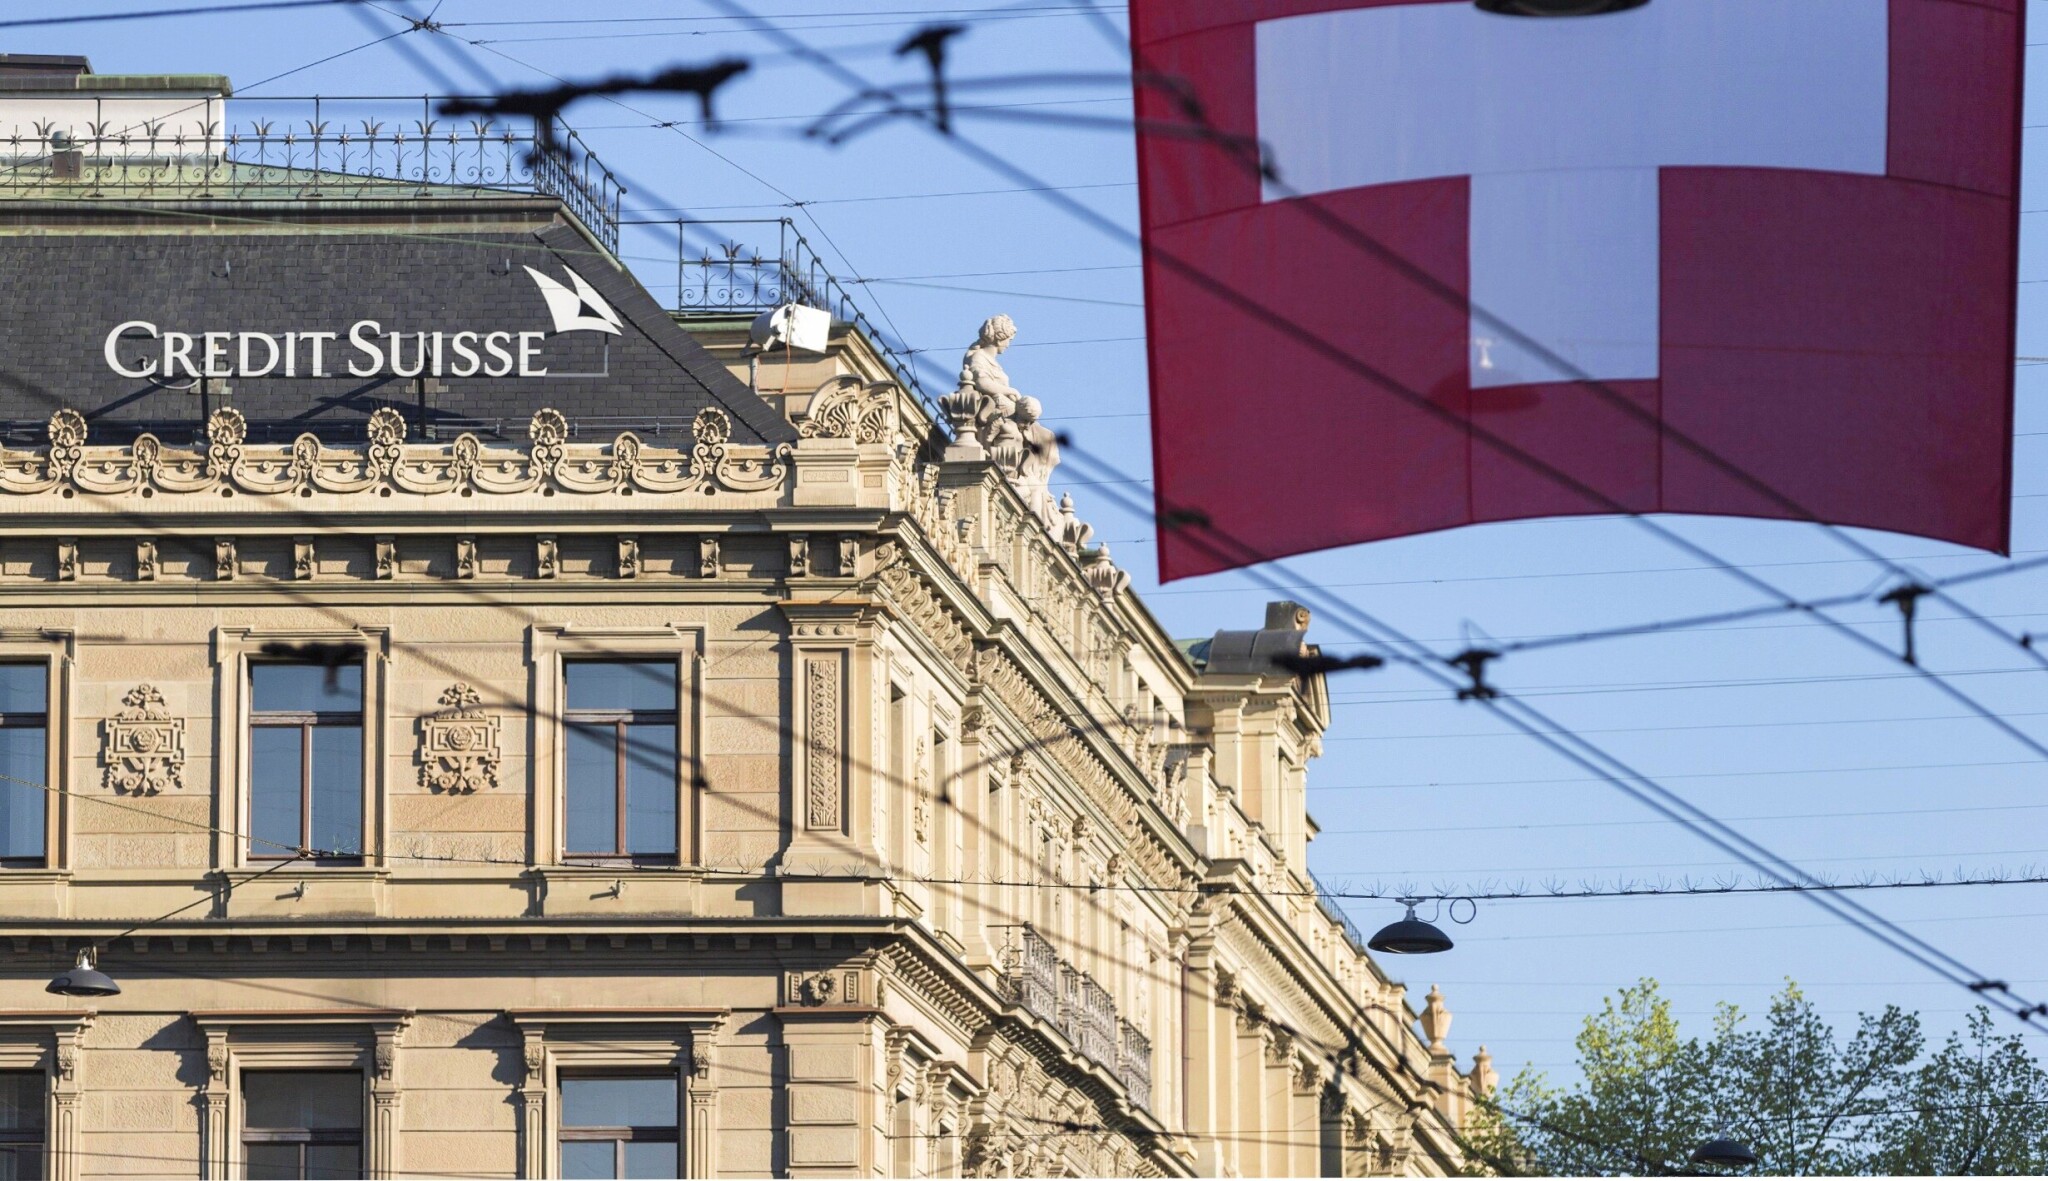 Švýcarská banka Credit Suisse se propadla do ztráty. Navýší kapitál o sto miliard korun